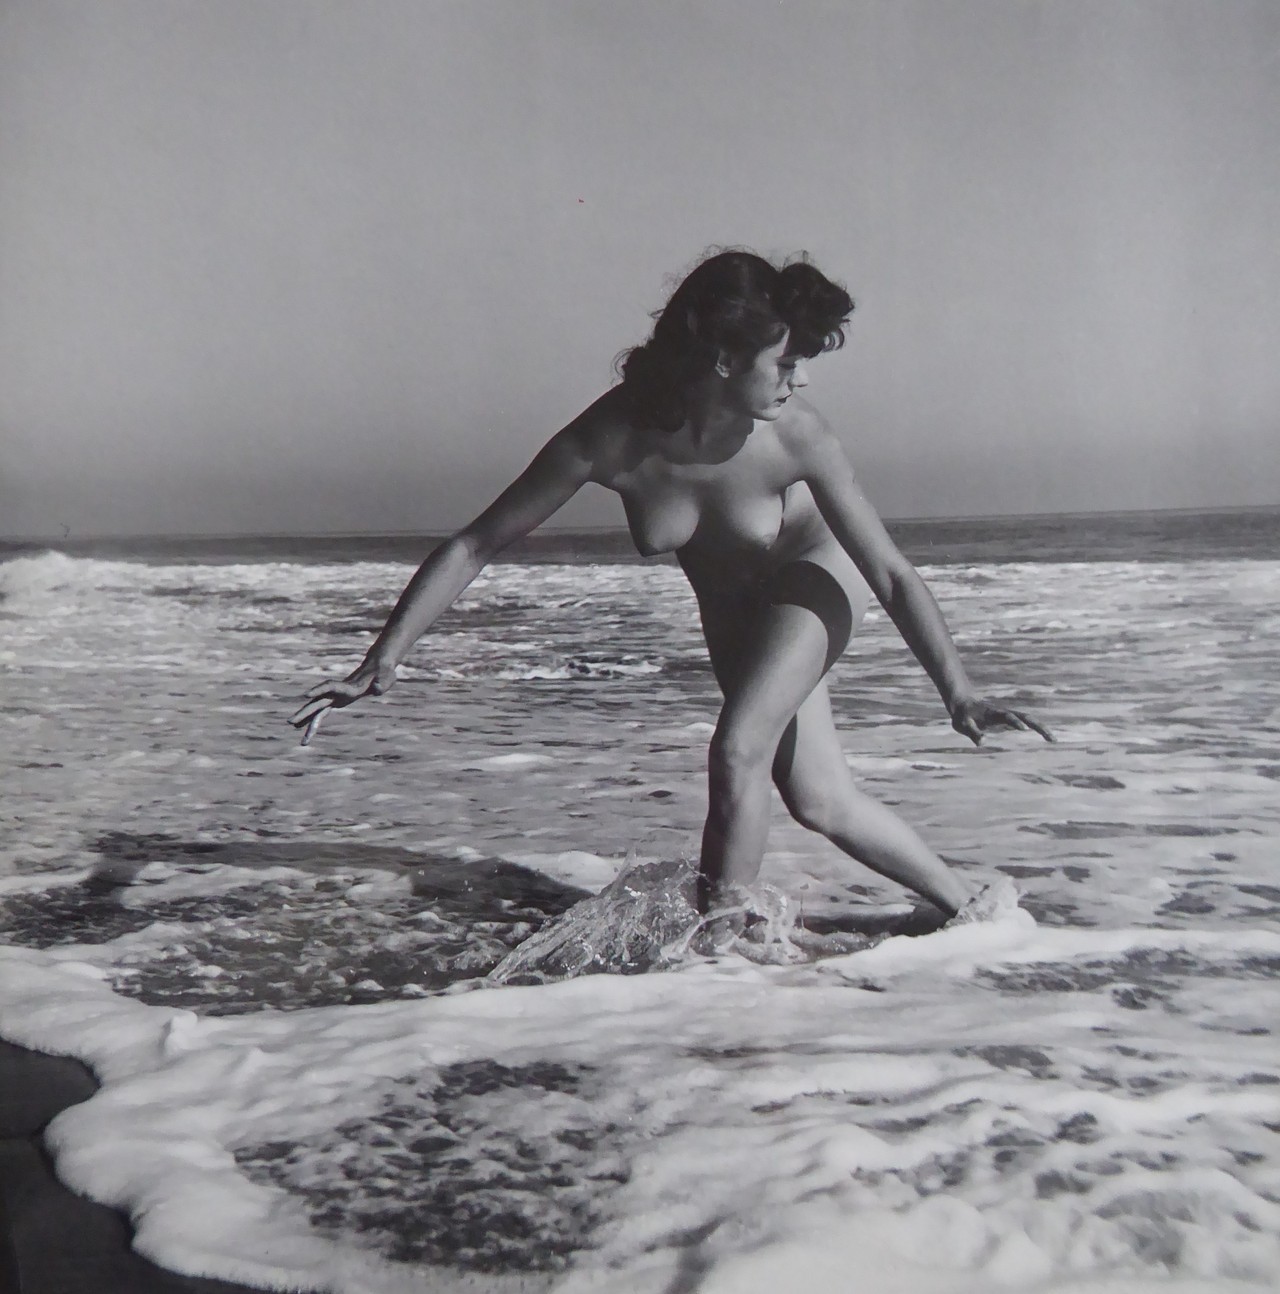 almavio:
“ André de Dienes (1913-1985) | Nude, c. 1960
”